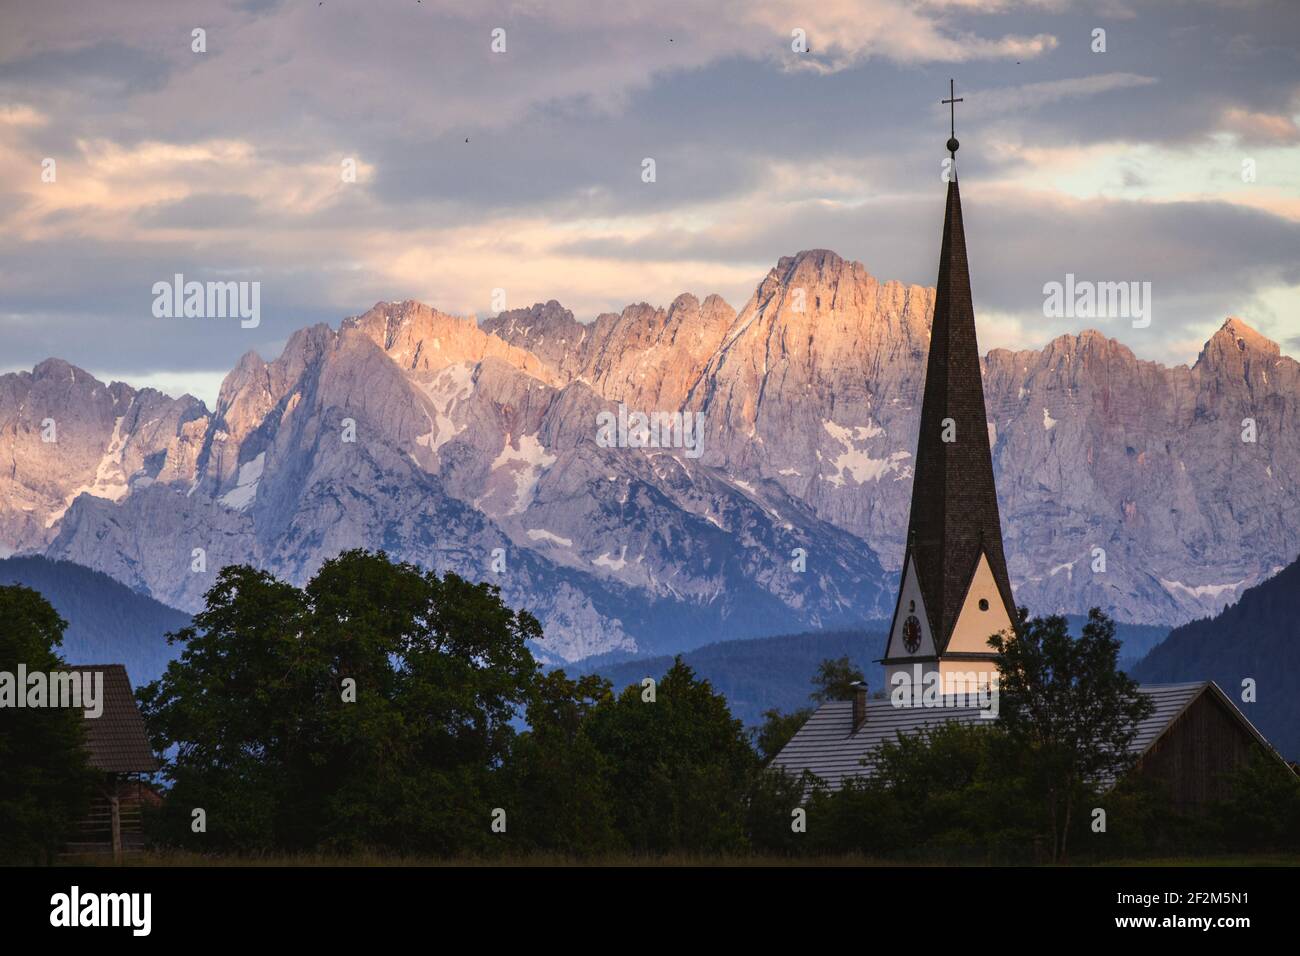 Austria, Carinthia, St. Stefan im Gailtal, parish church St. Stefan an der Gail, church tower in front of the Julian Alps Stock Photo